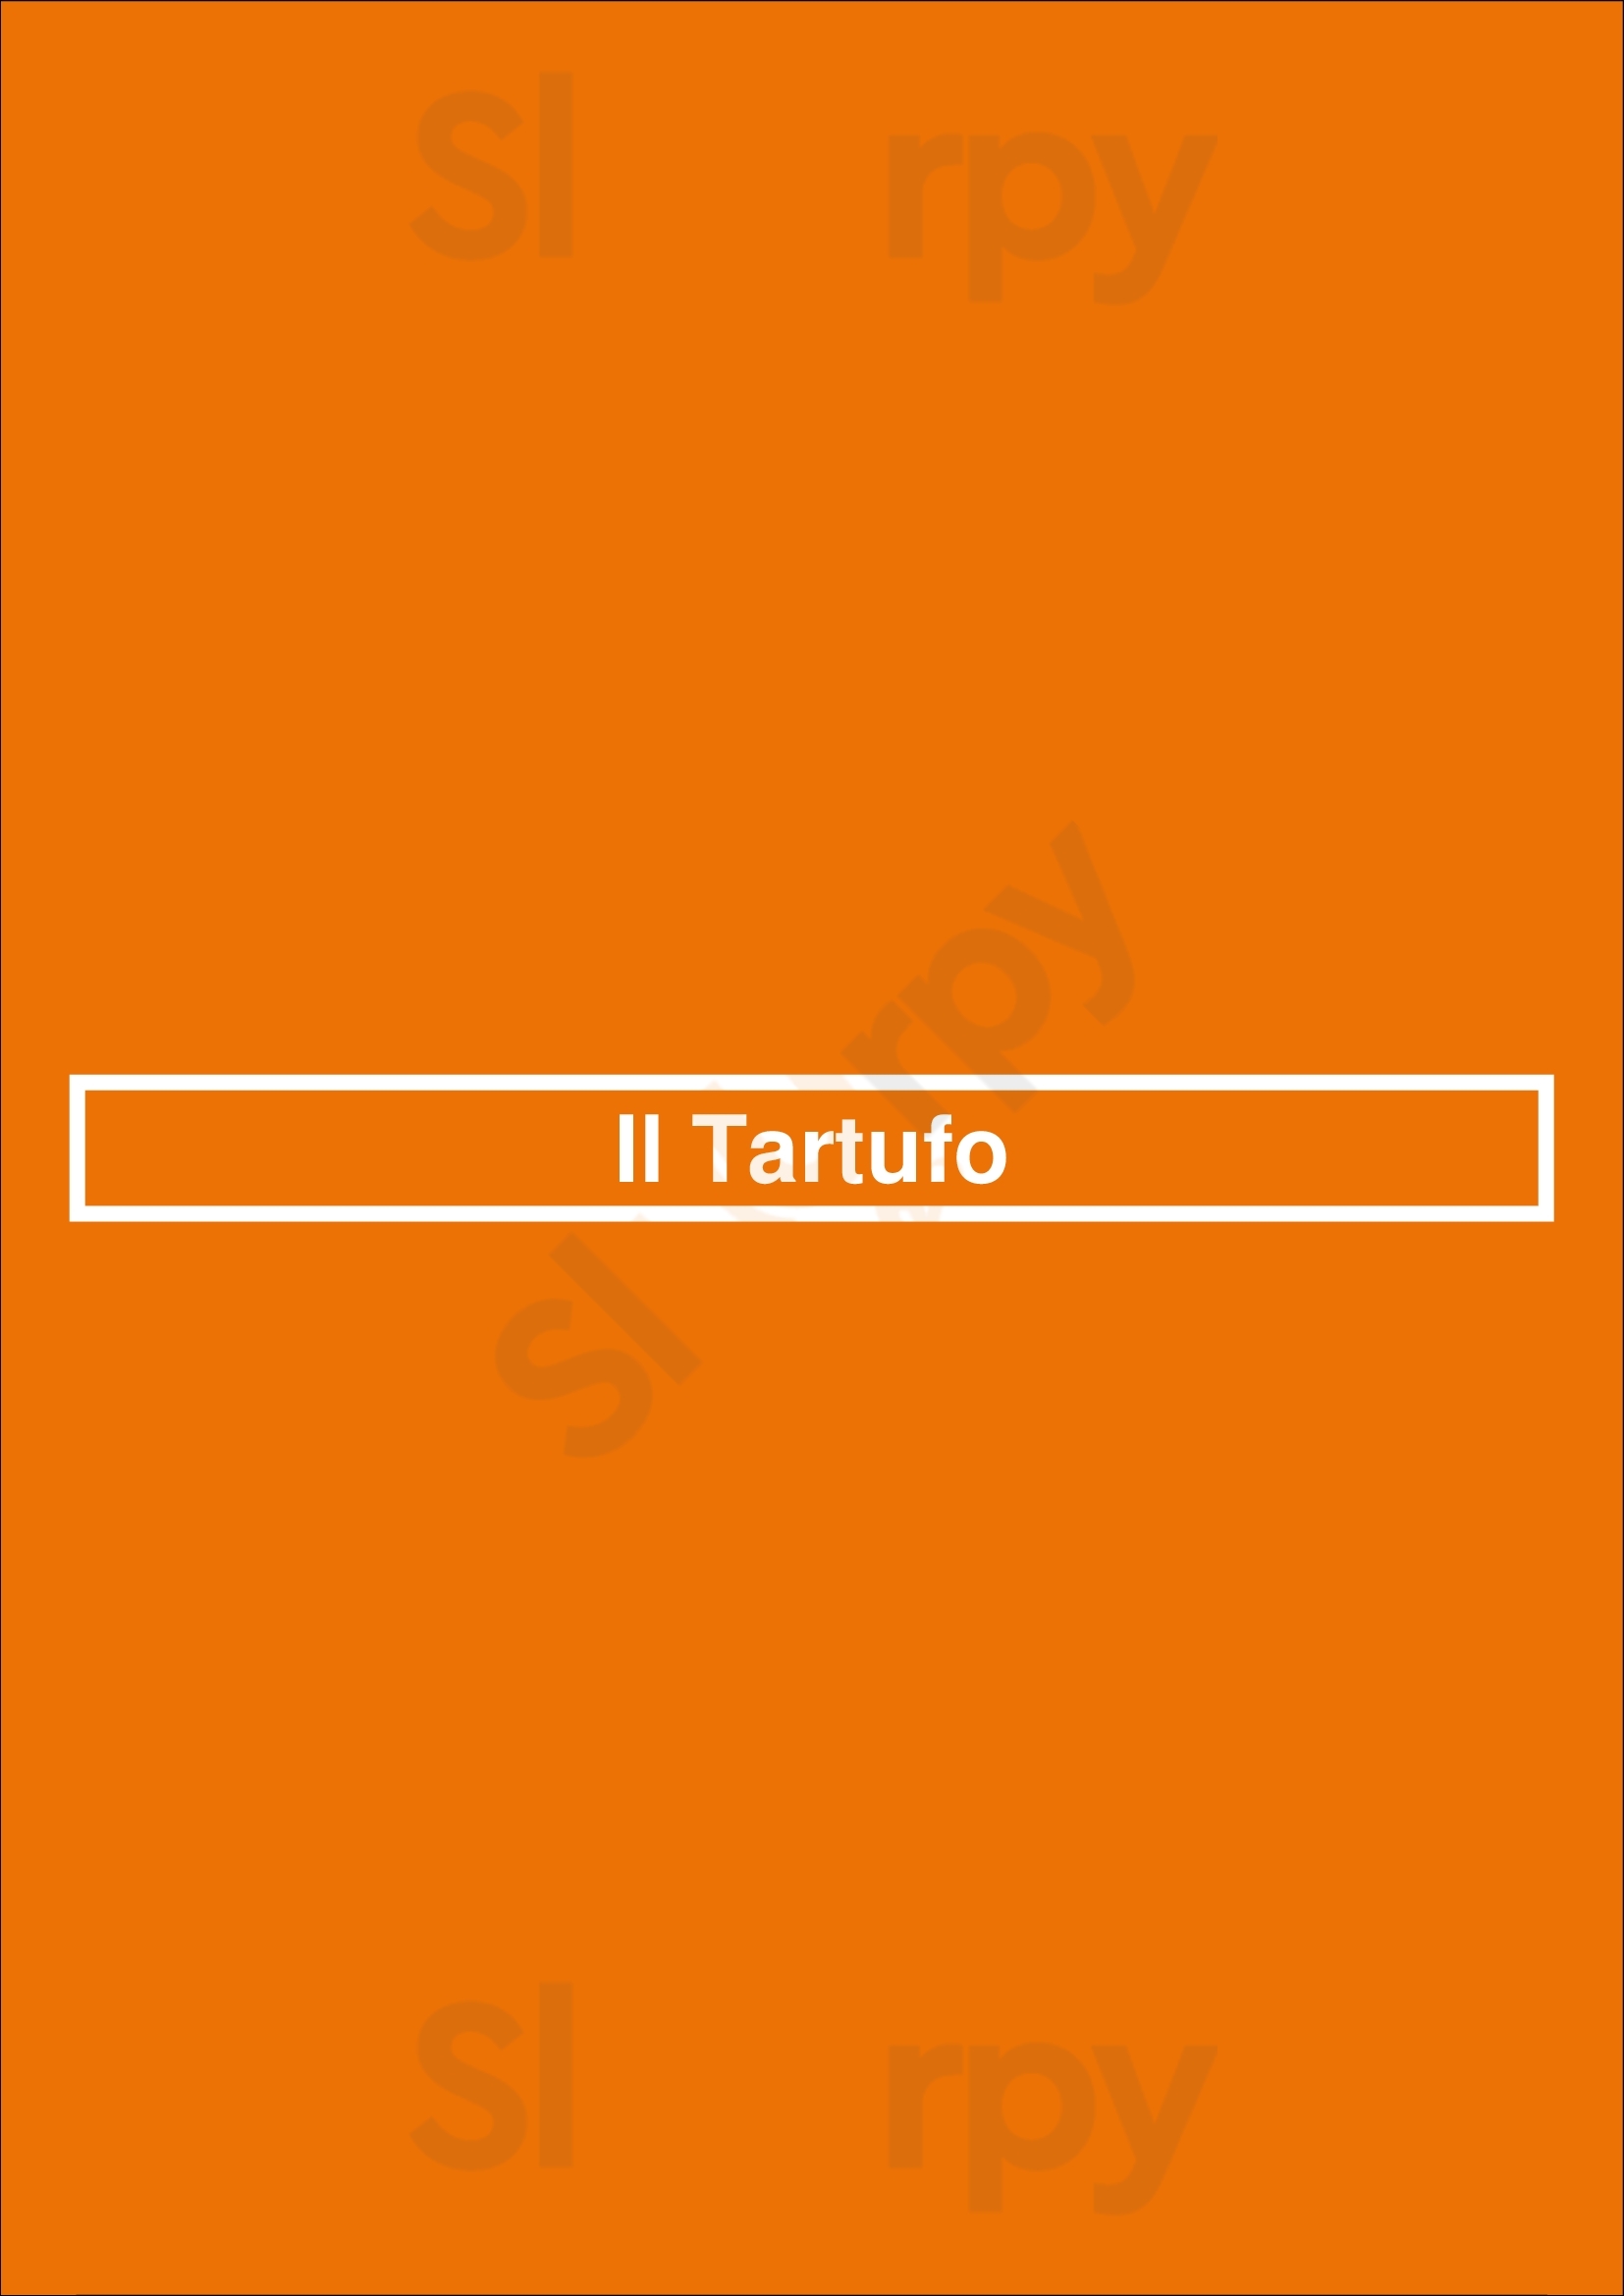 Il Tartufo Coimbra Menu - 1